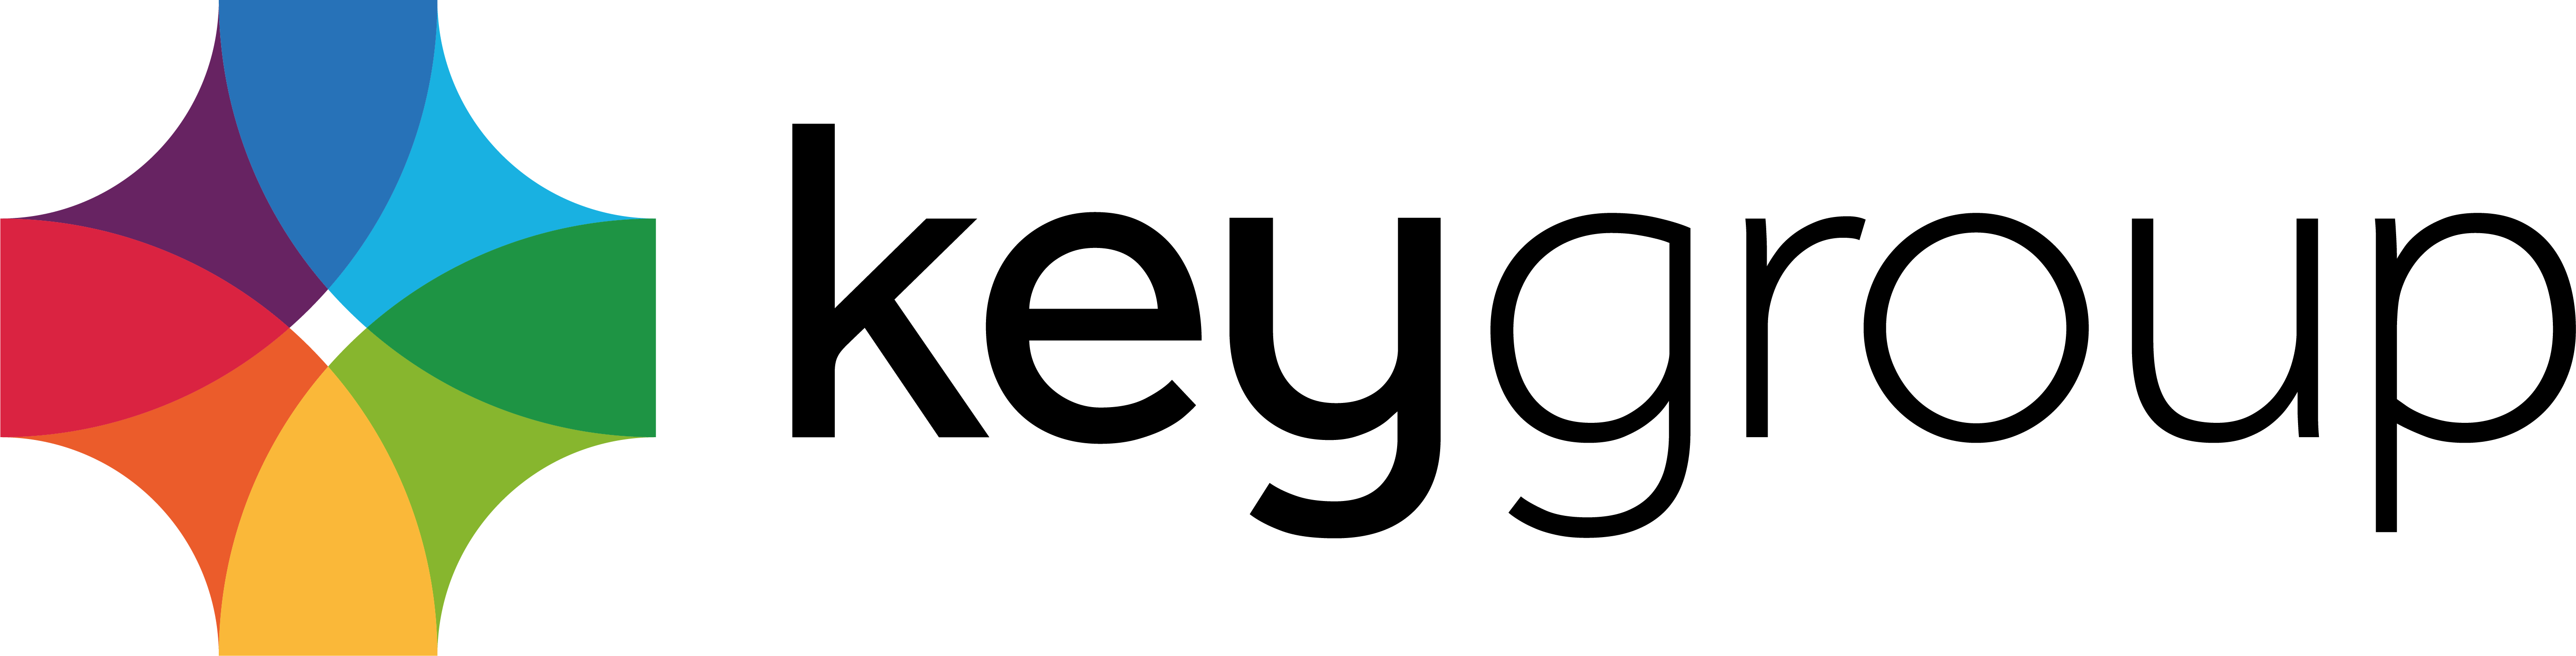 KeyGroup.Club - Licenças para softwares